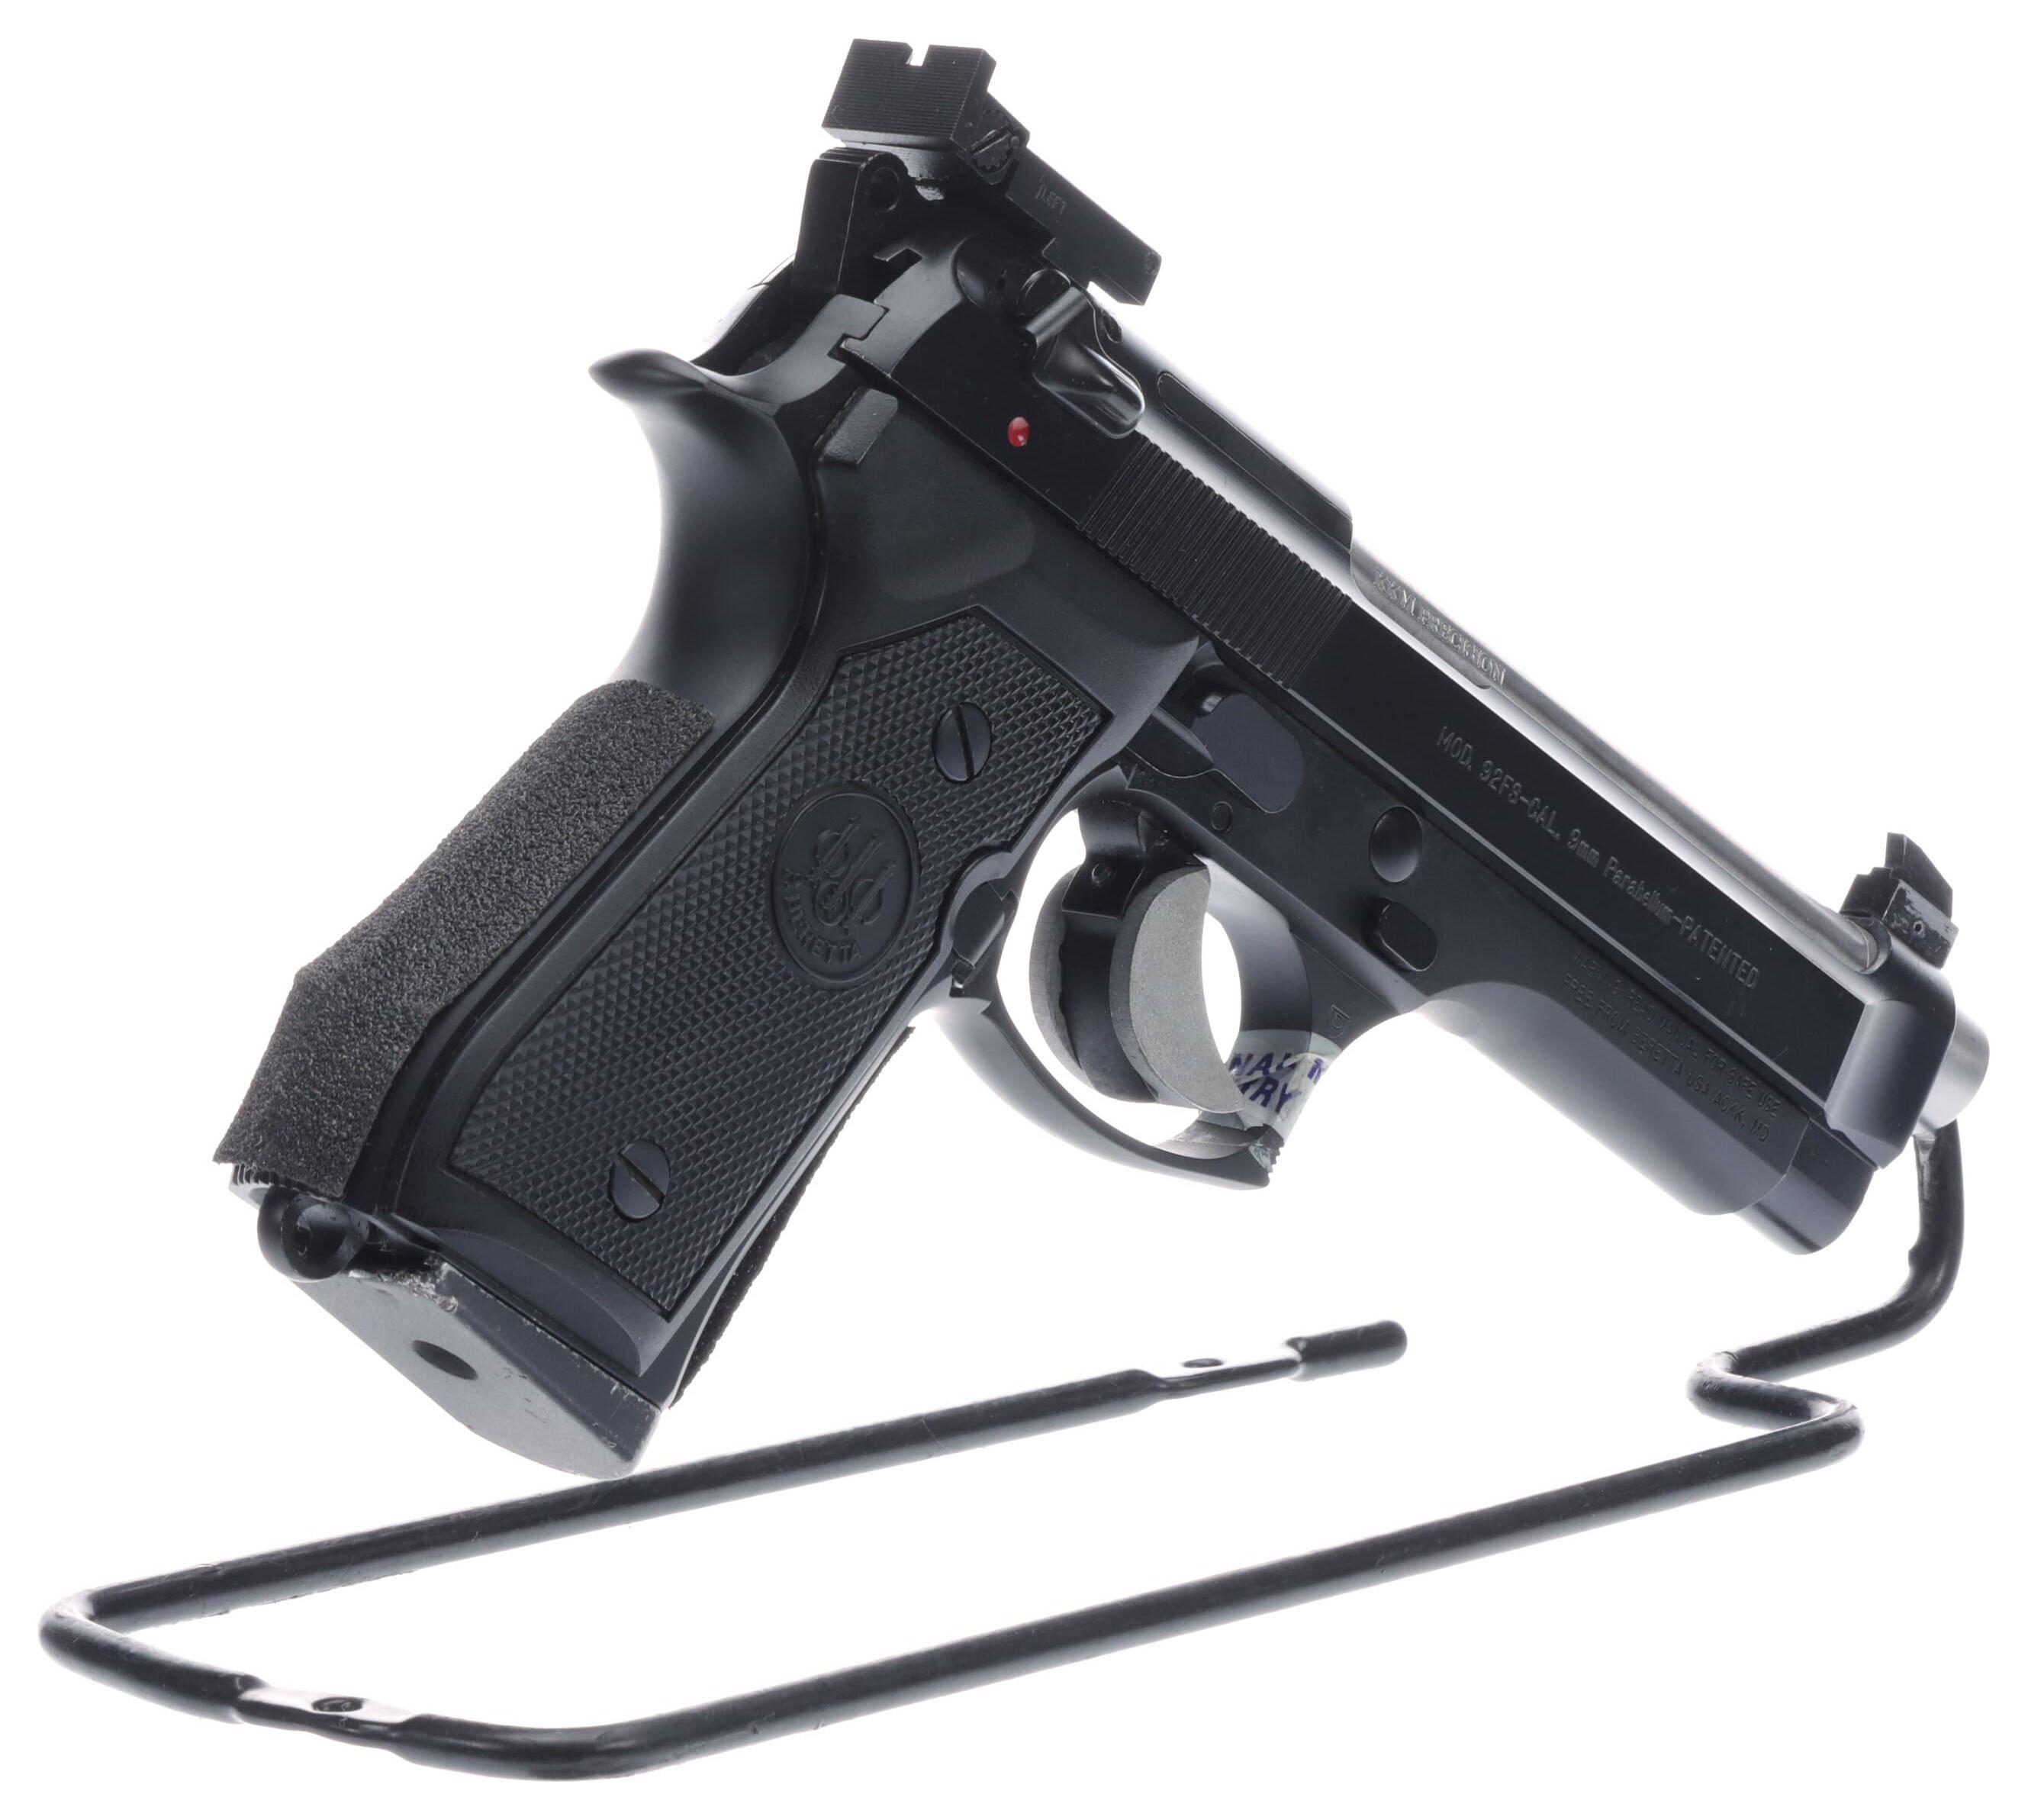 Beretta Model 92fs Semi-Automatic Pistol with Case